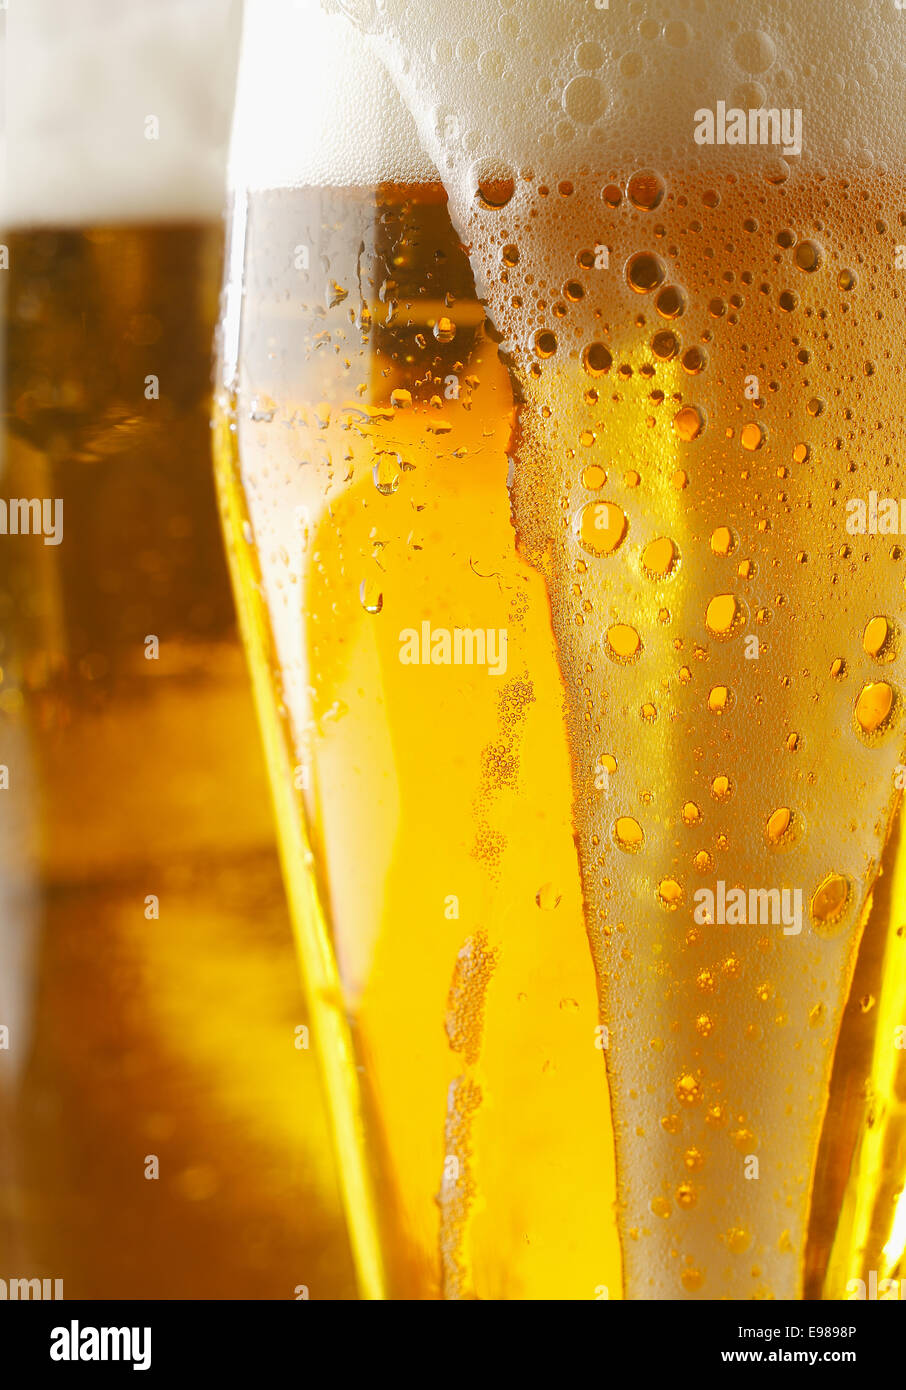 Nahaufnahme von einem schaumigen Cverflowing Glas golden Ale oder Bier mit Flüssigkeit laufen über die Außenseite des Glases, abgeschnitten Bild anzeigen Stockfoto